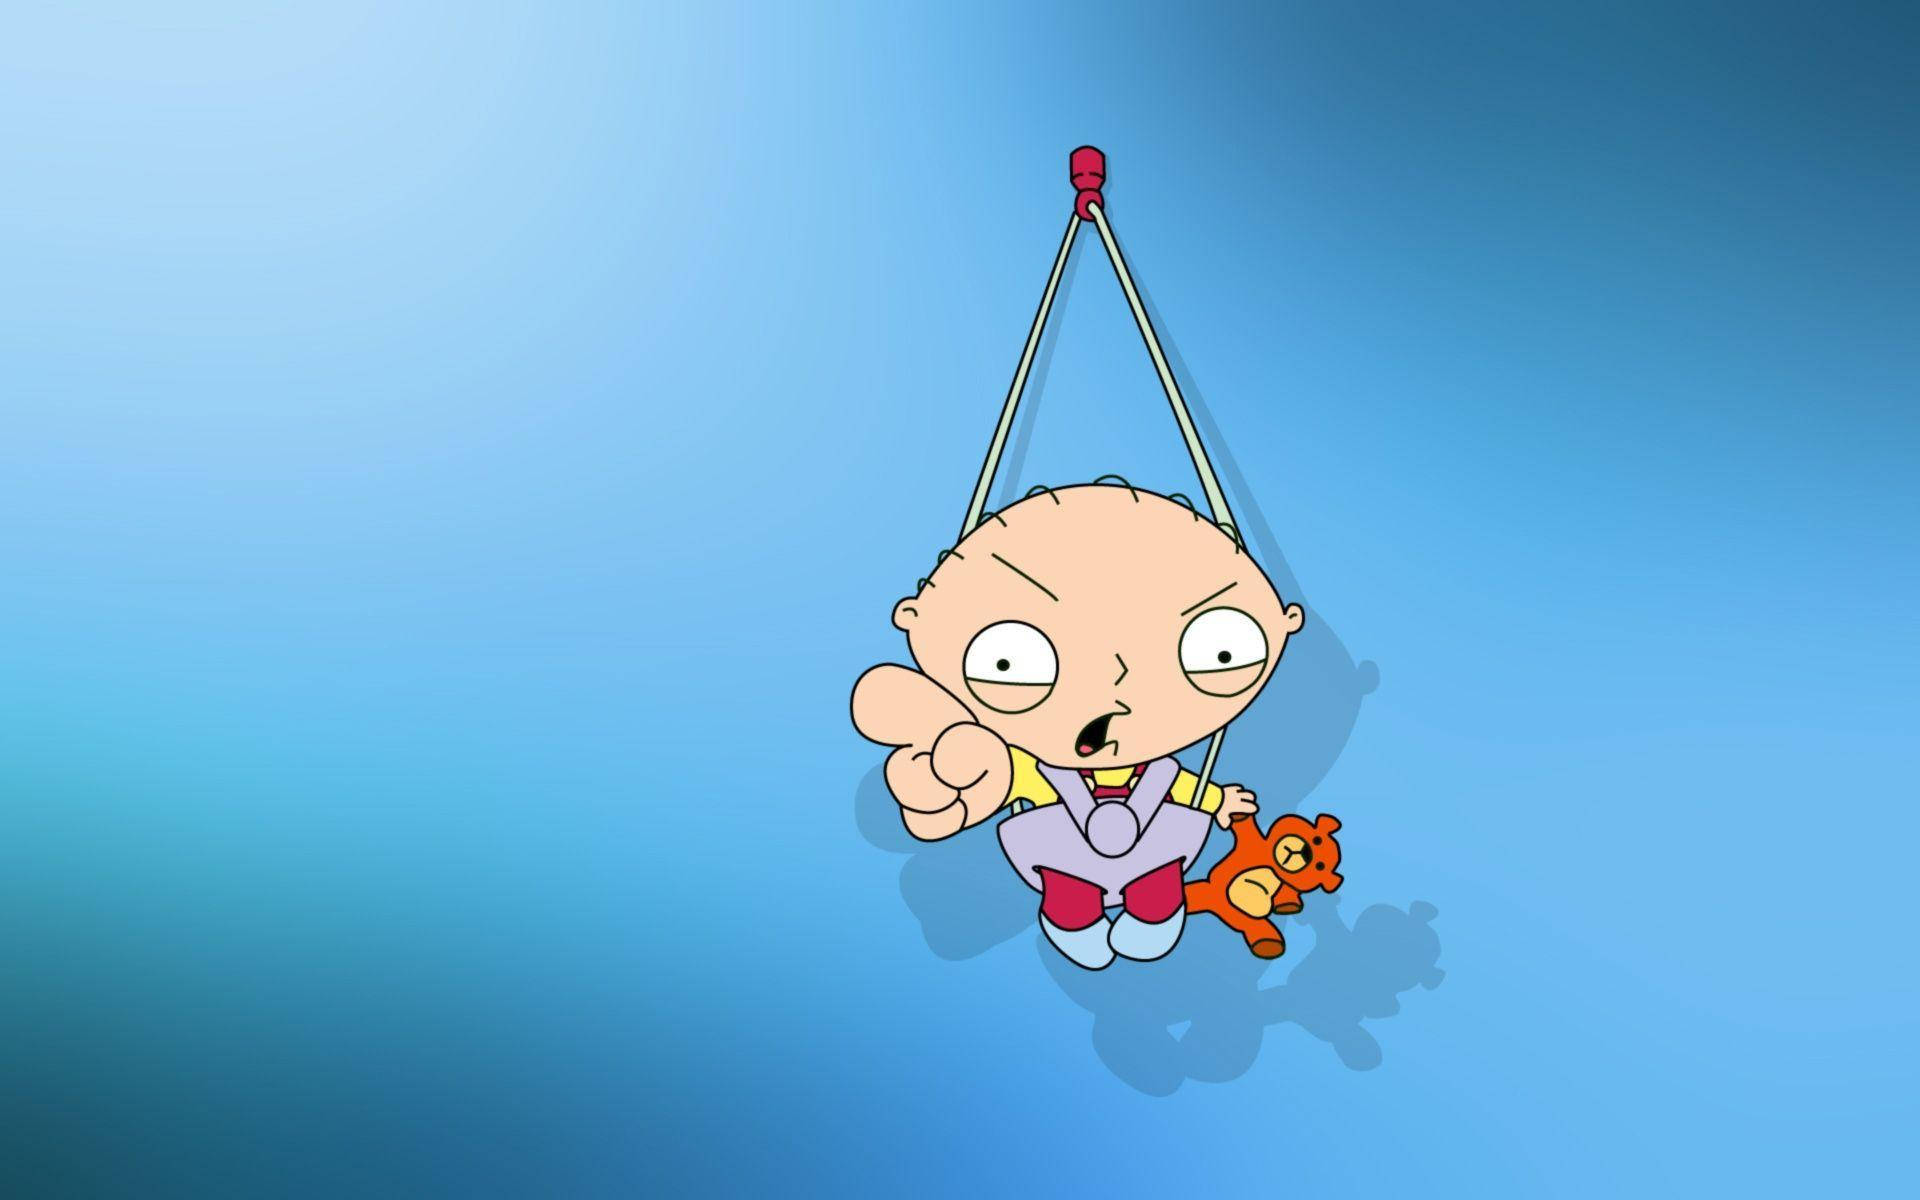 Hanging Stewie Griffin